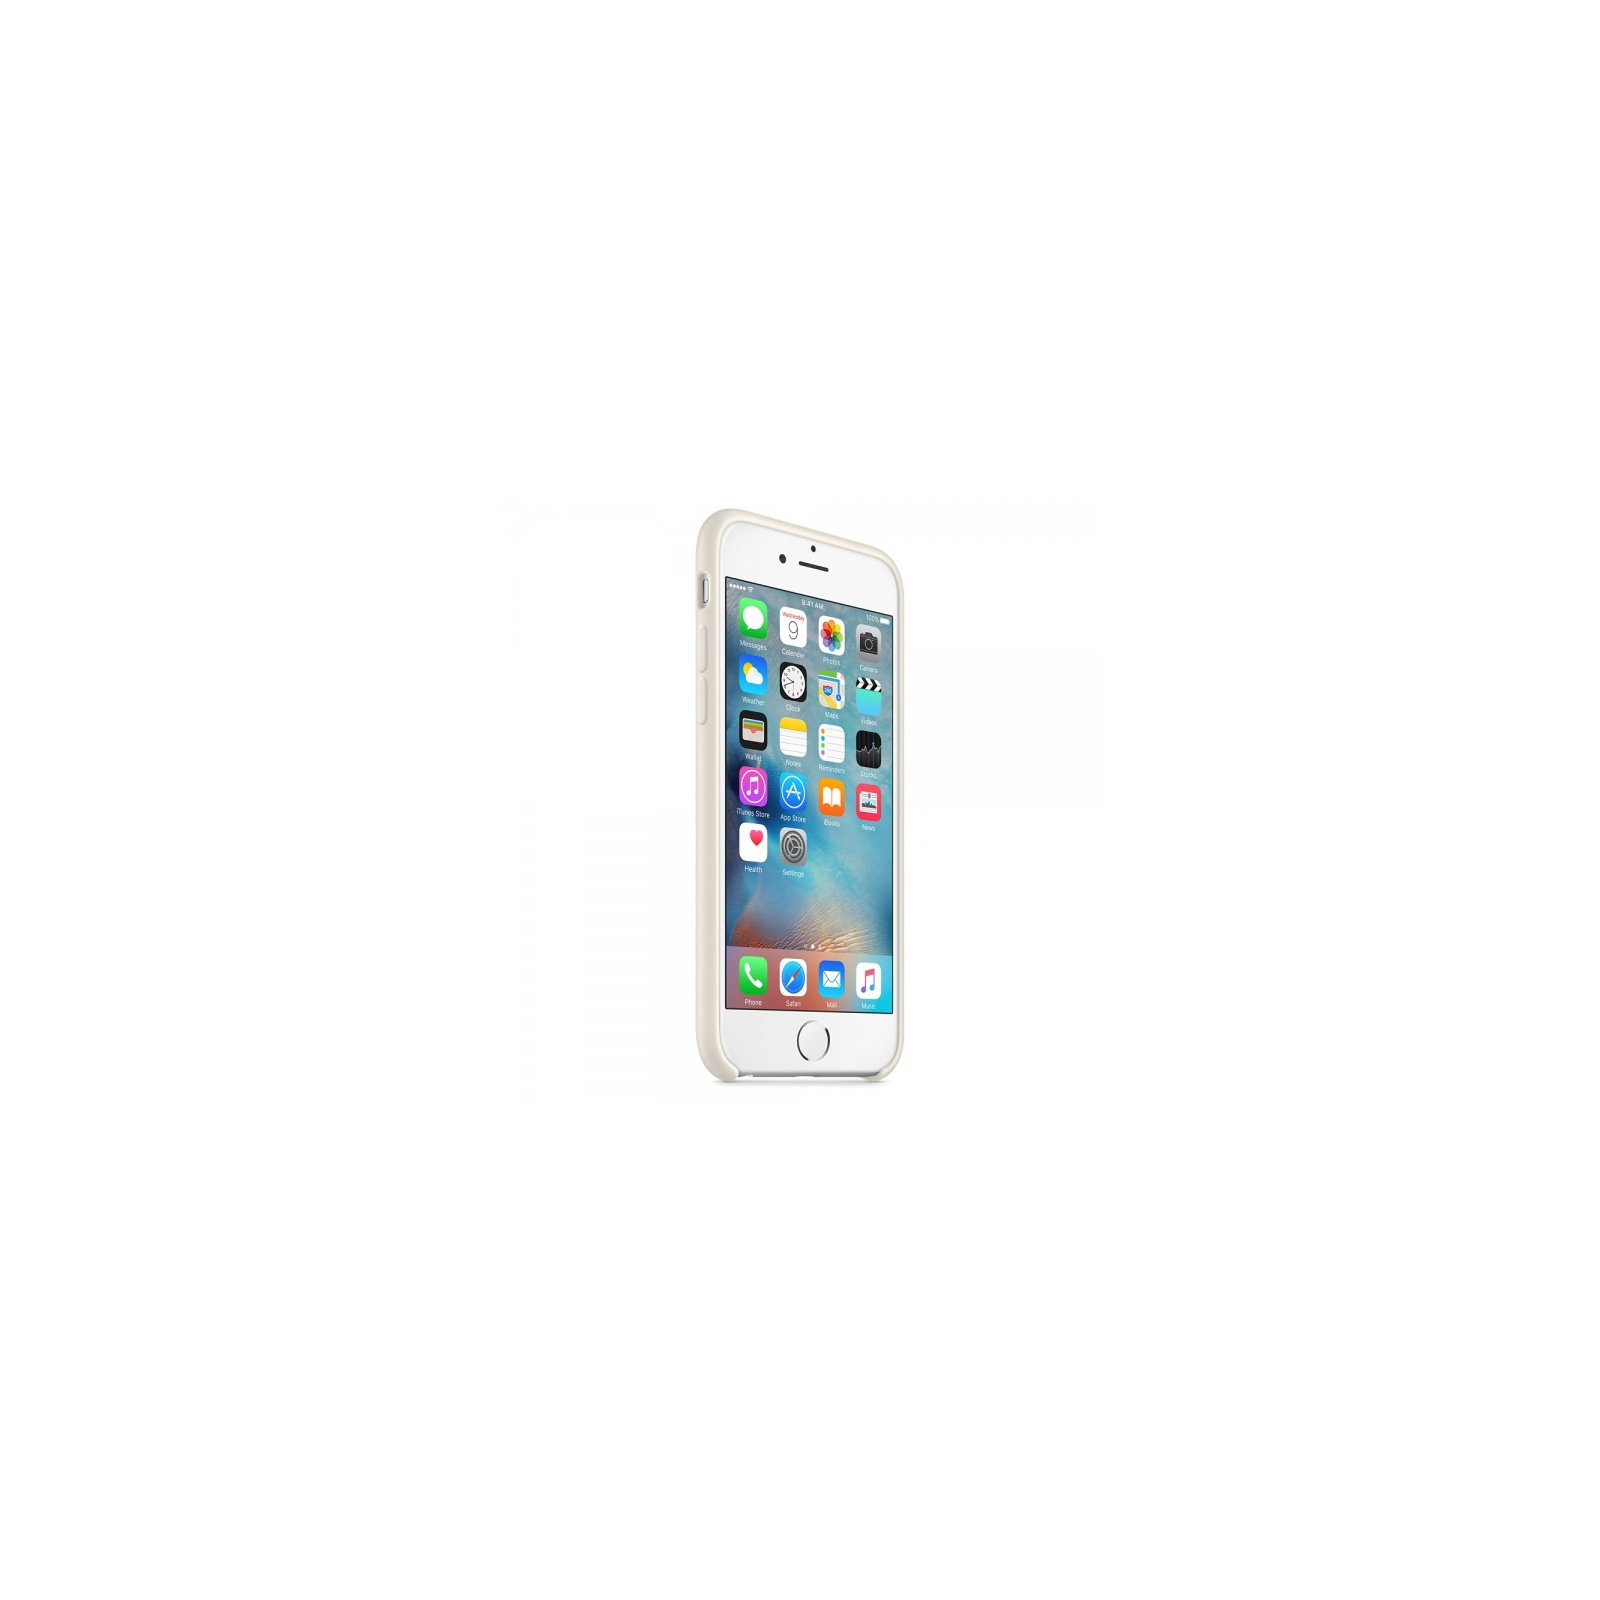 Чехол для мобильного телефона Apple для iPhone 6/6s Antique White (MLCX2ZM/A) изображение 3